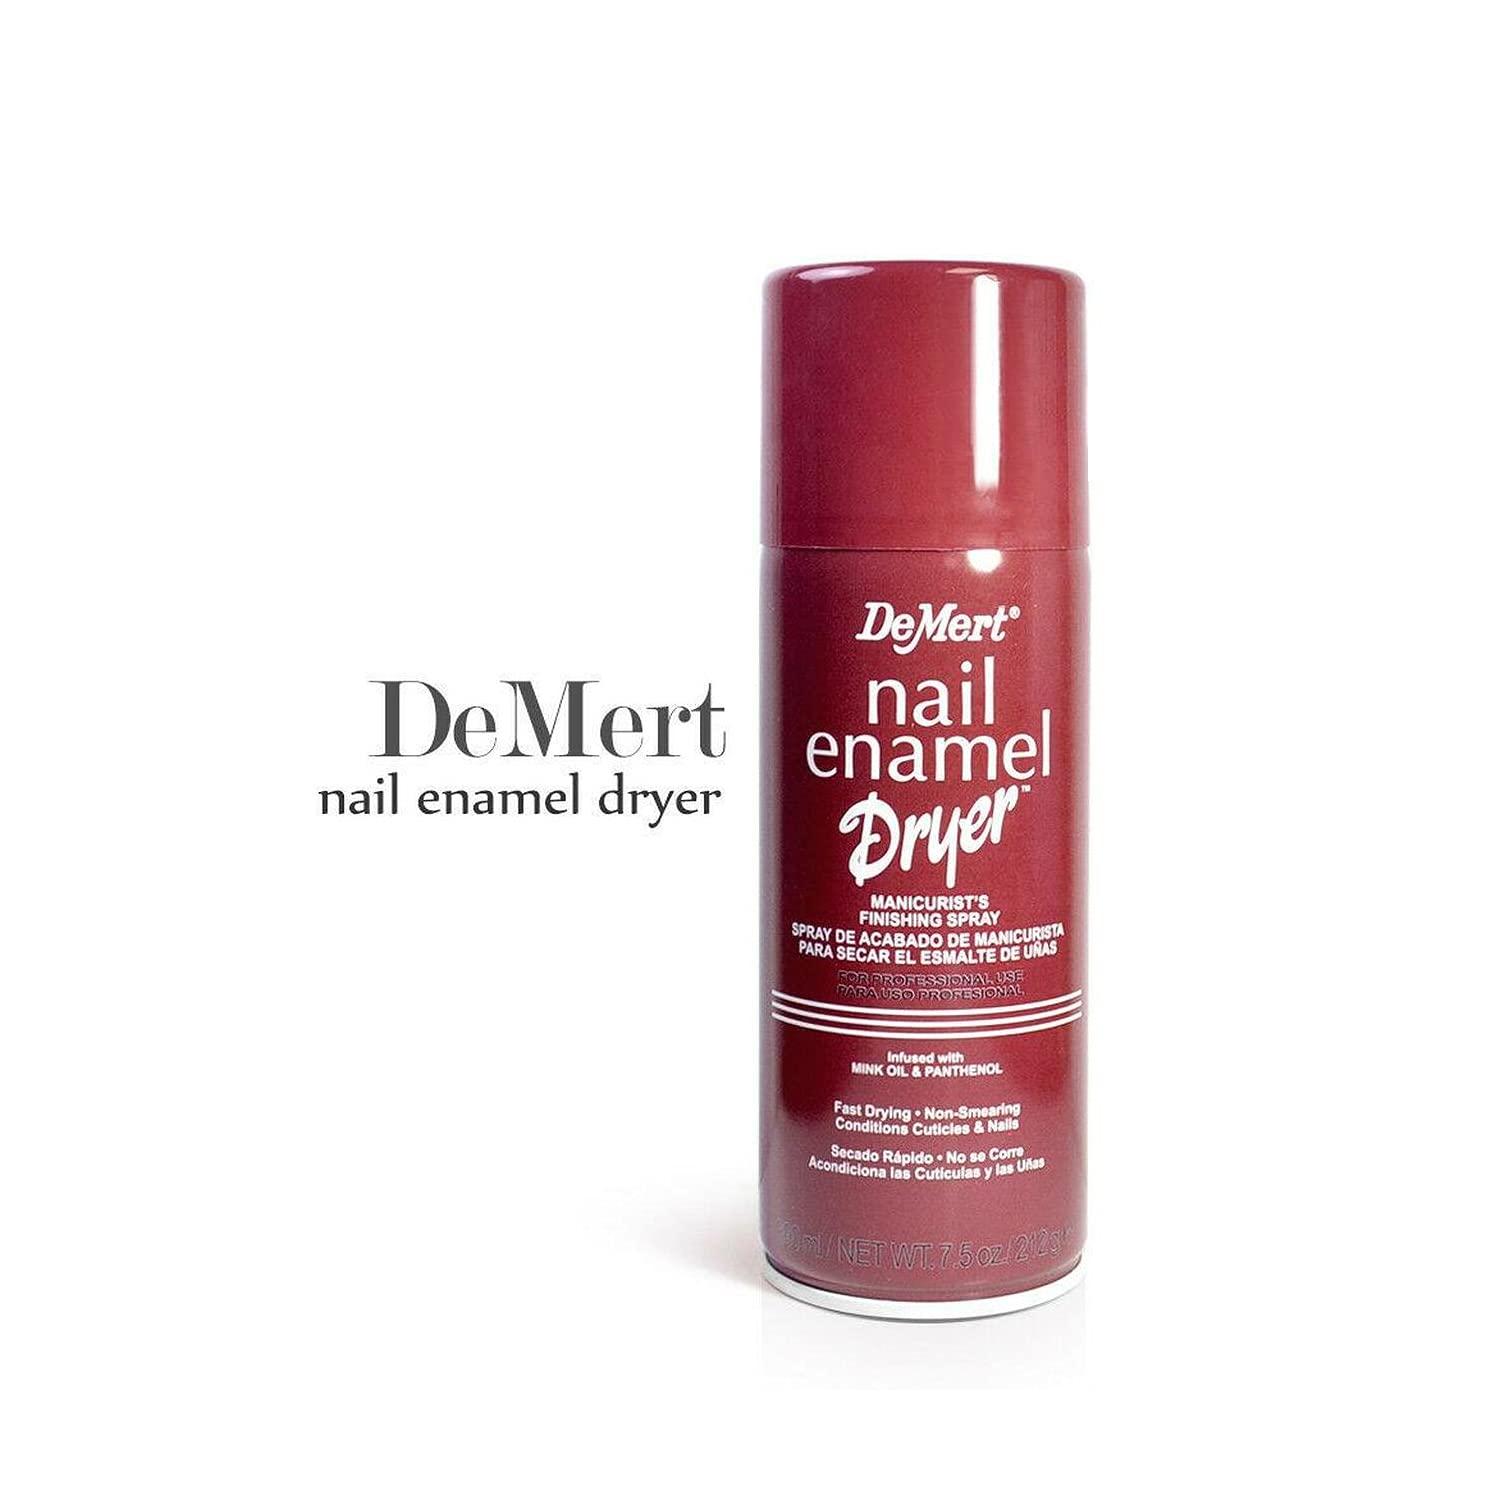 Demert Nail Enamel Dryer Spray 7.5 Ounce (221ml) (3 Pack)